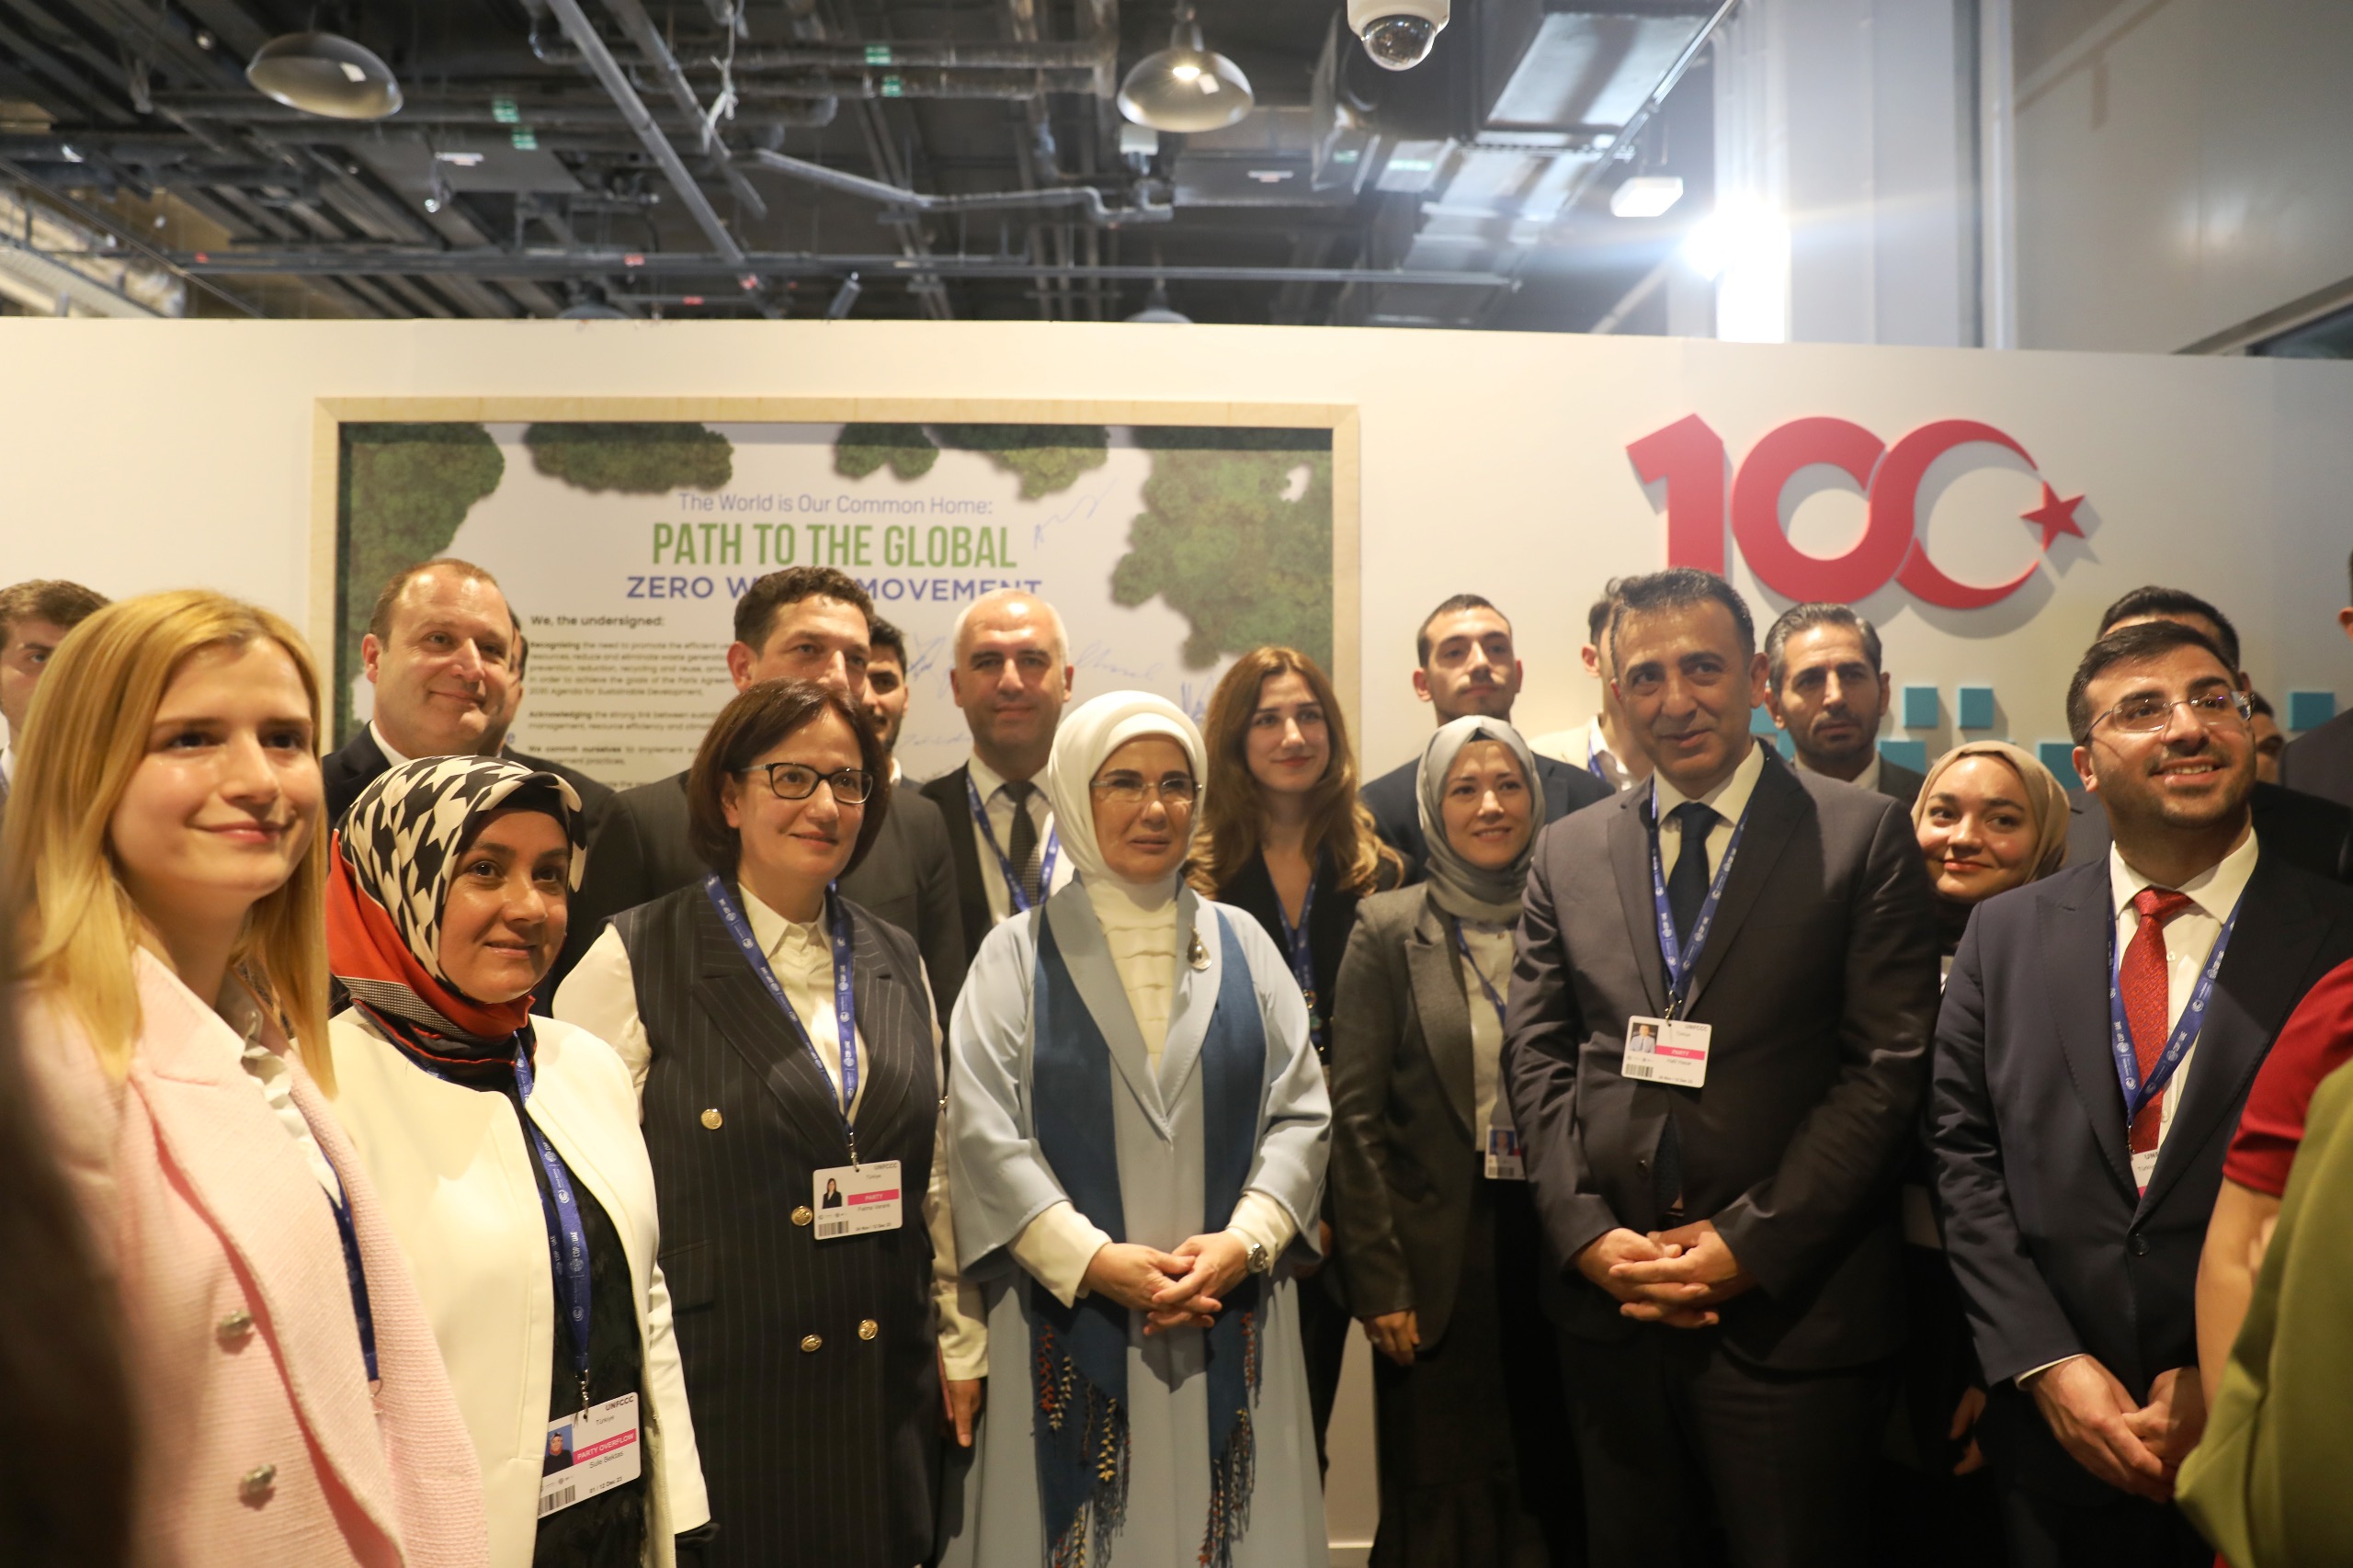 Sayın Emine Erdoğan Birleşmiş Milletler İklim Değişikliği Çerçeve Sözleşmesi Taraflar Konferansı vesilesiyle Dubai Expo City’de Bakanlığımızın stant alanını ziyaret etti.